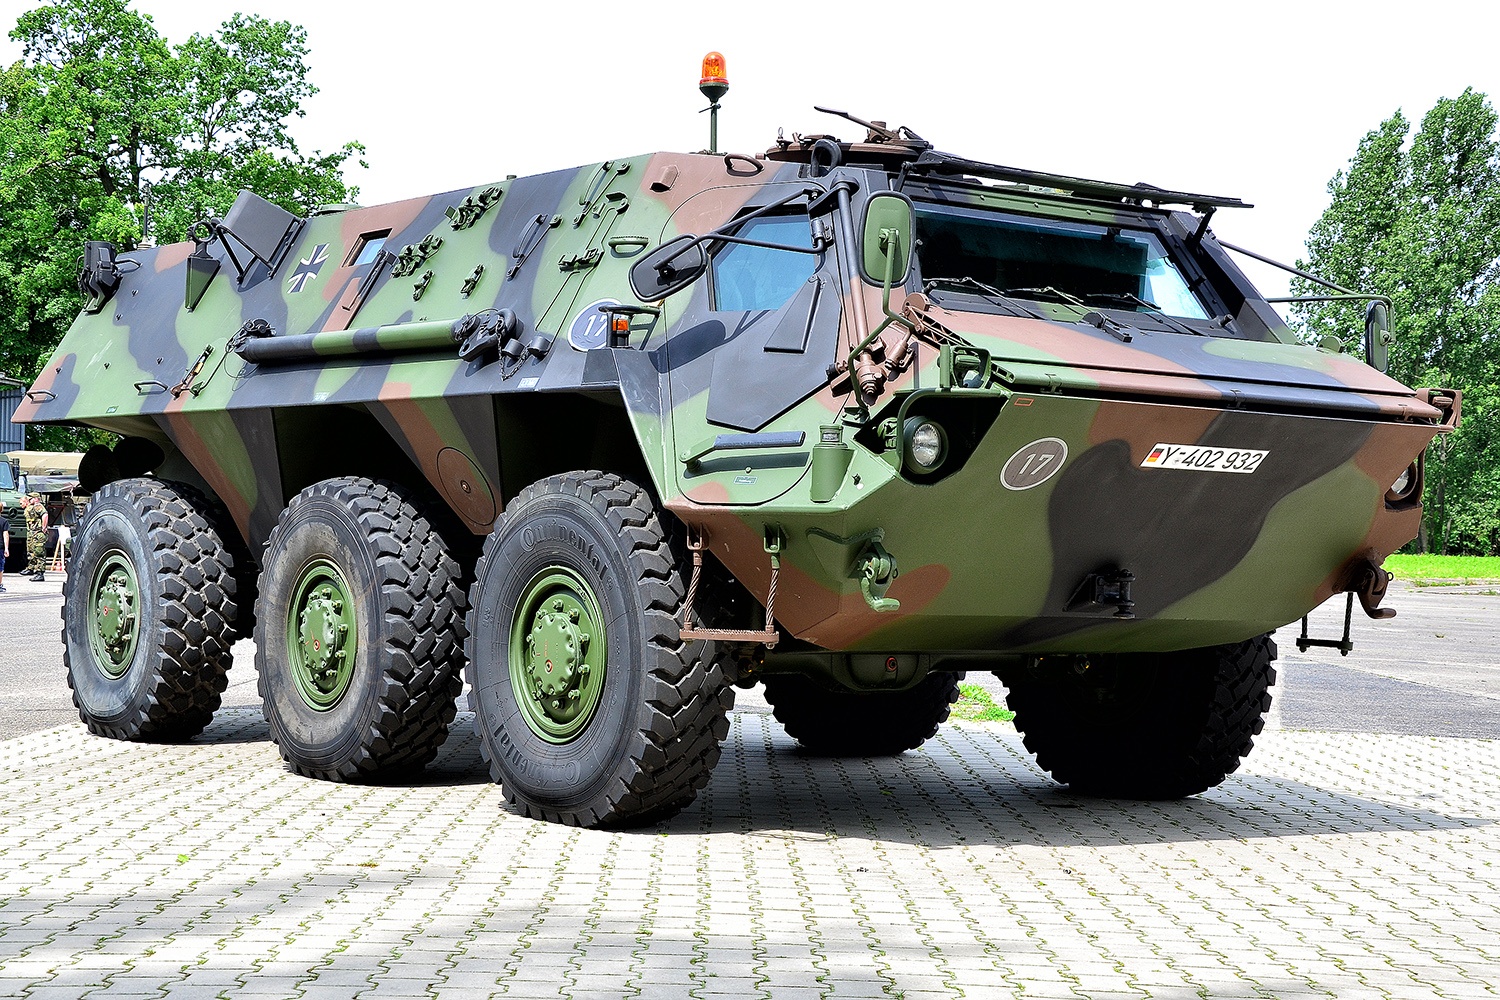 Transportpanzer_Fuchs_%28TPz_Fuchs%29_der_Bundeswehr_%2810579660405%29.jpg